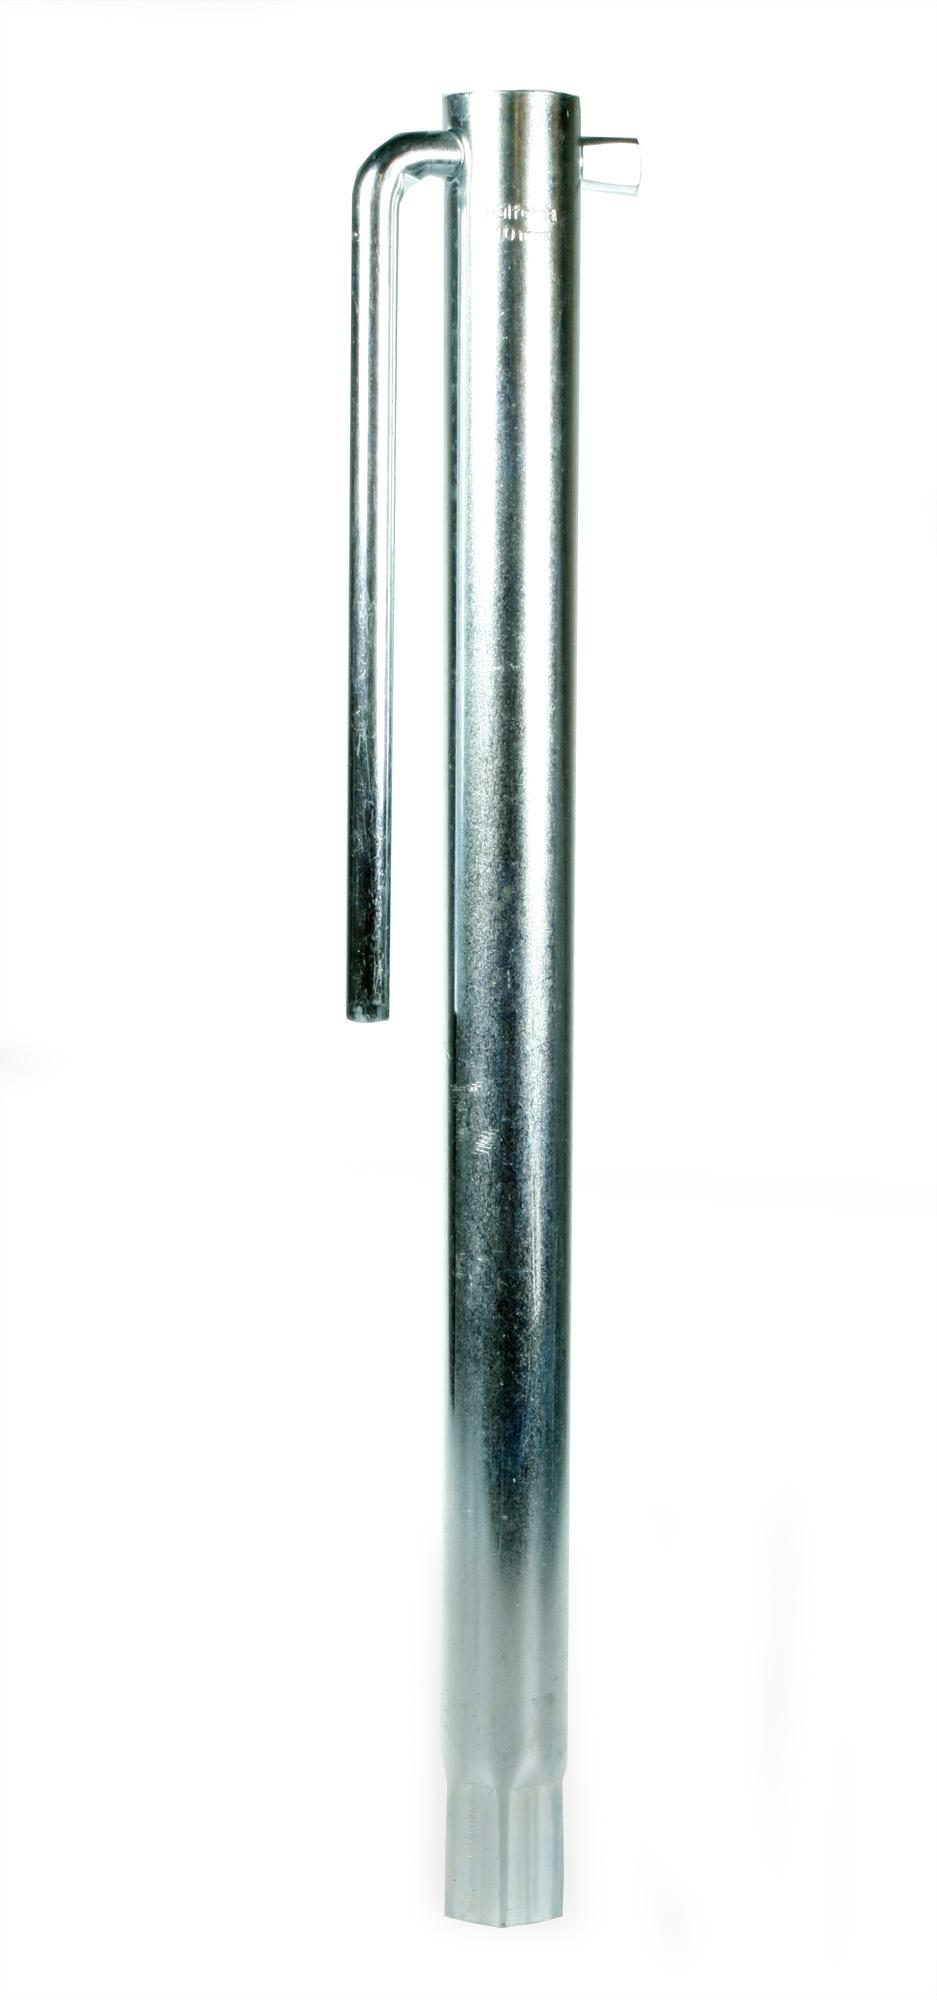 Plug Spanner 10mm X-Long Reach 